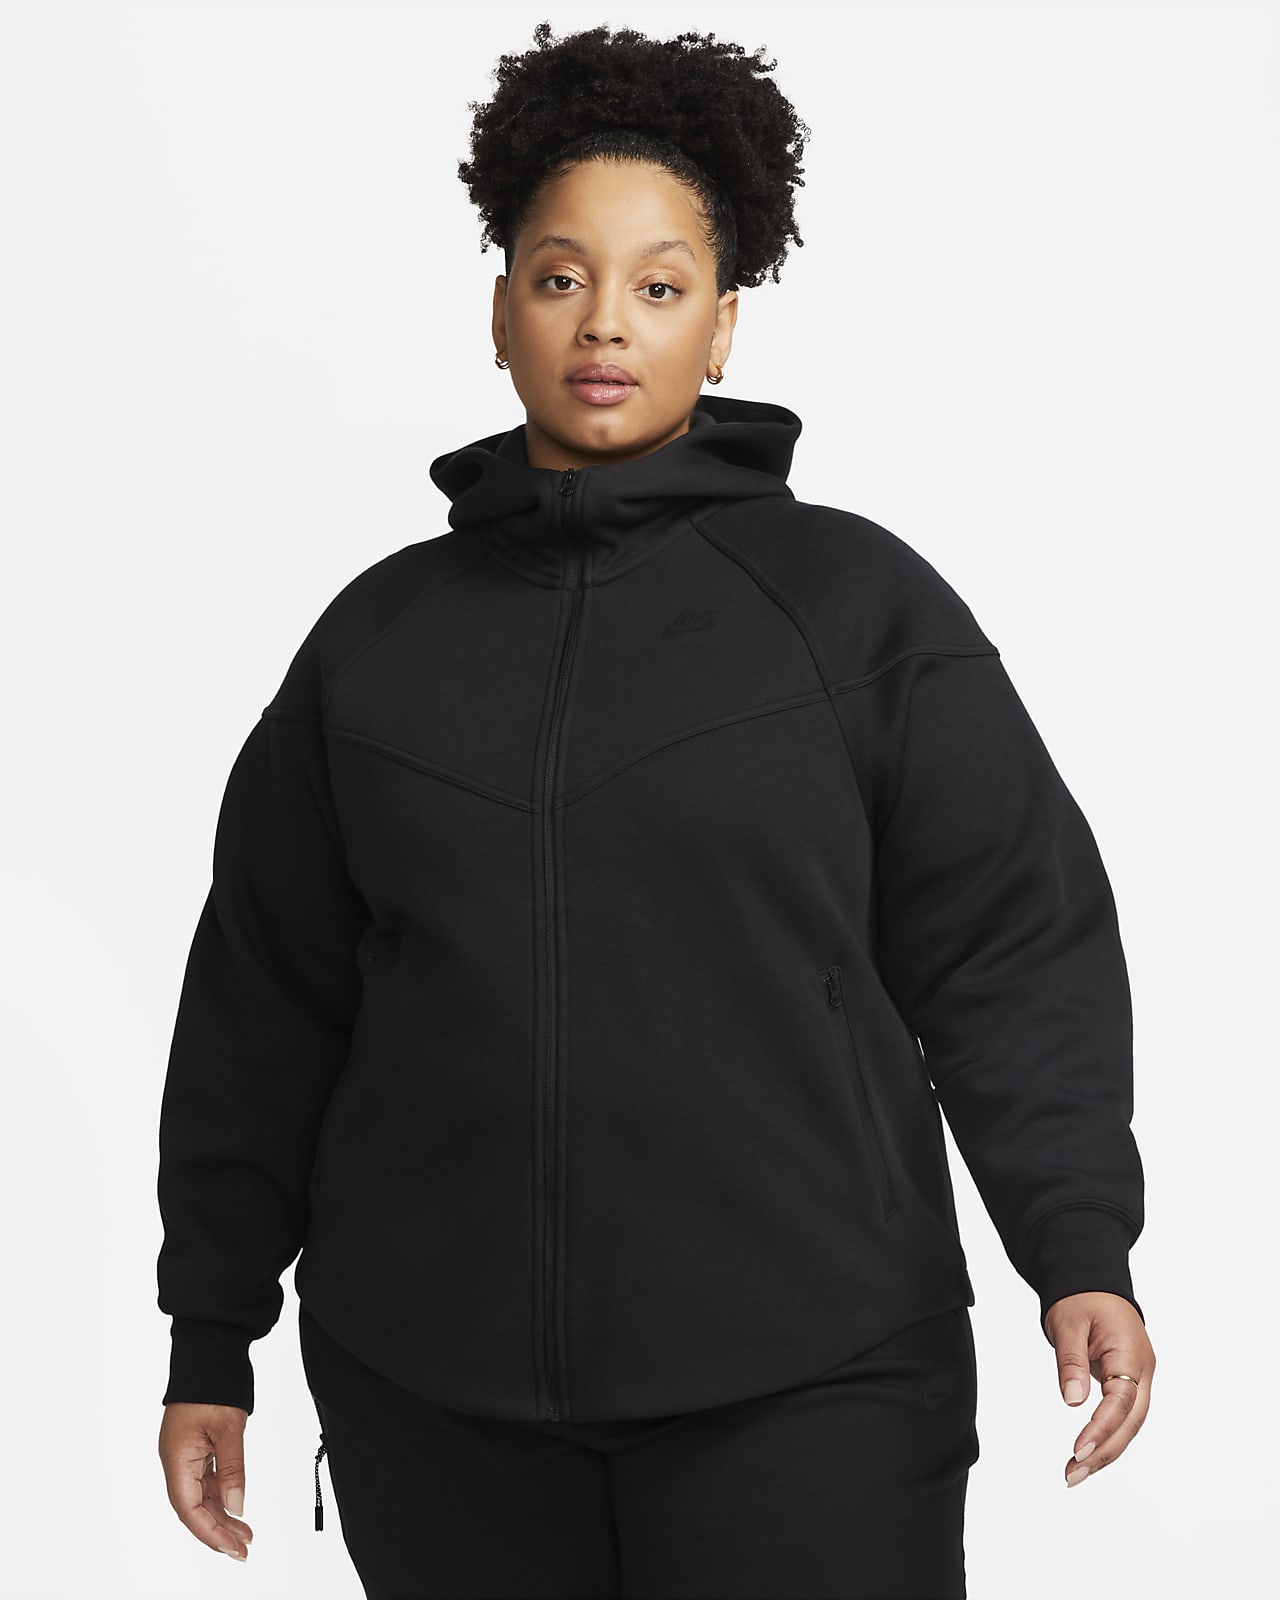 Γυναικεία μπλούζα με κουκούλα και φερμουάρ σε όλο το μήκος Nike Sportswear Tech Fleece Windrunner (μεγάλα μεγέθη)